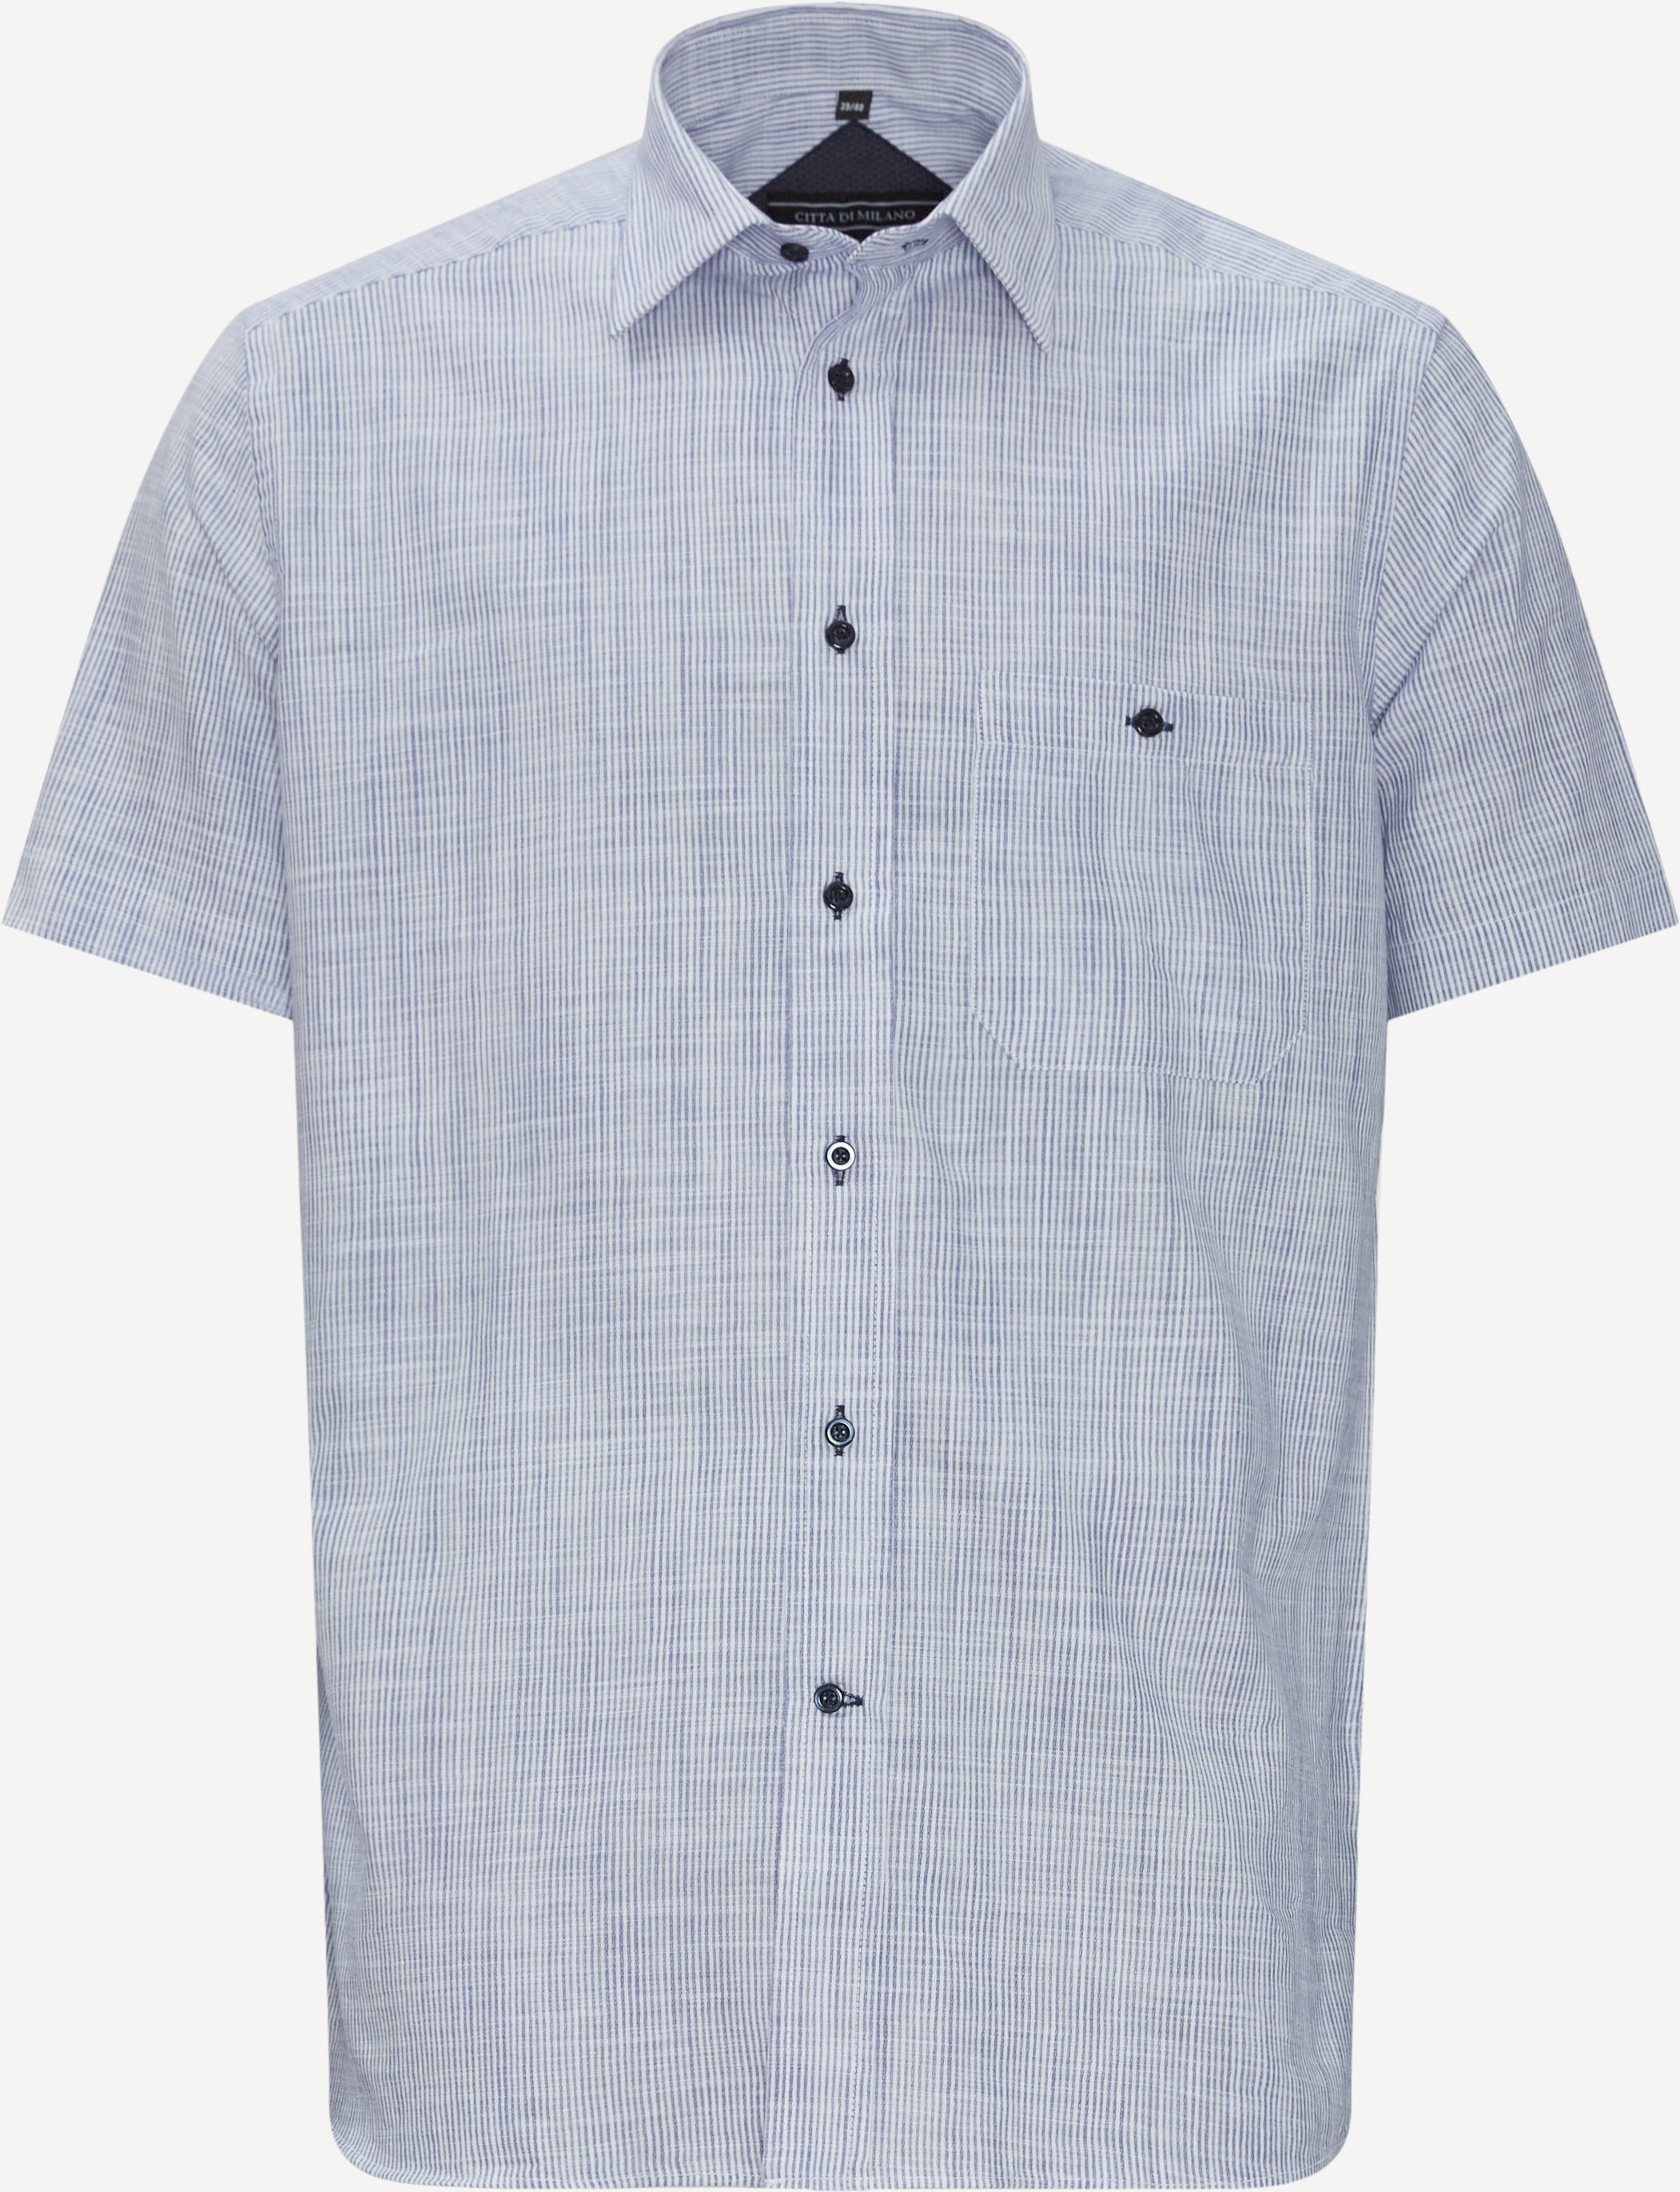 Kortärmade skjortor - Regular fit - Blå